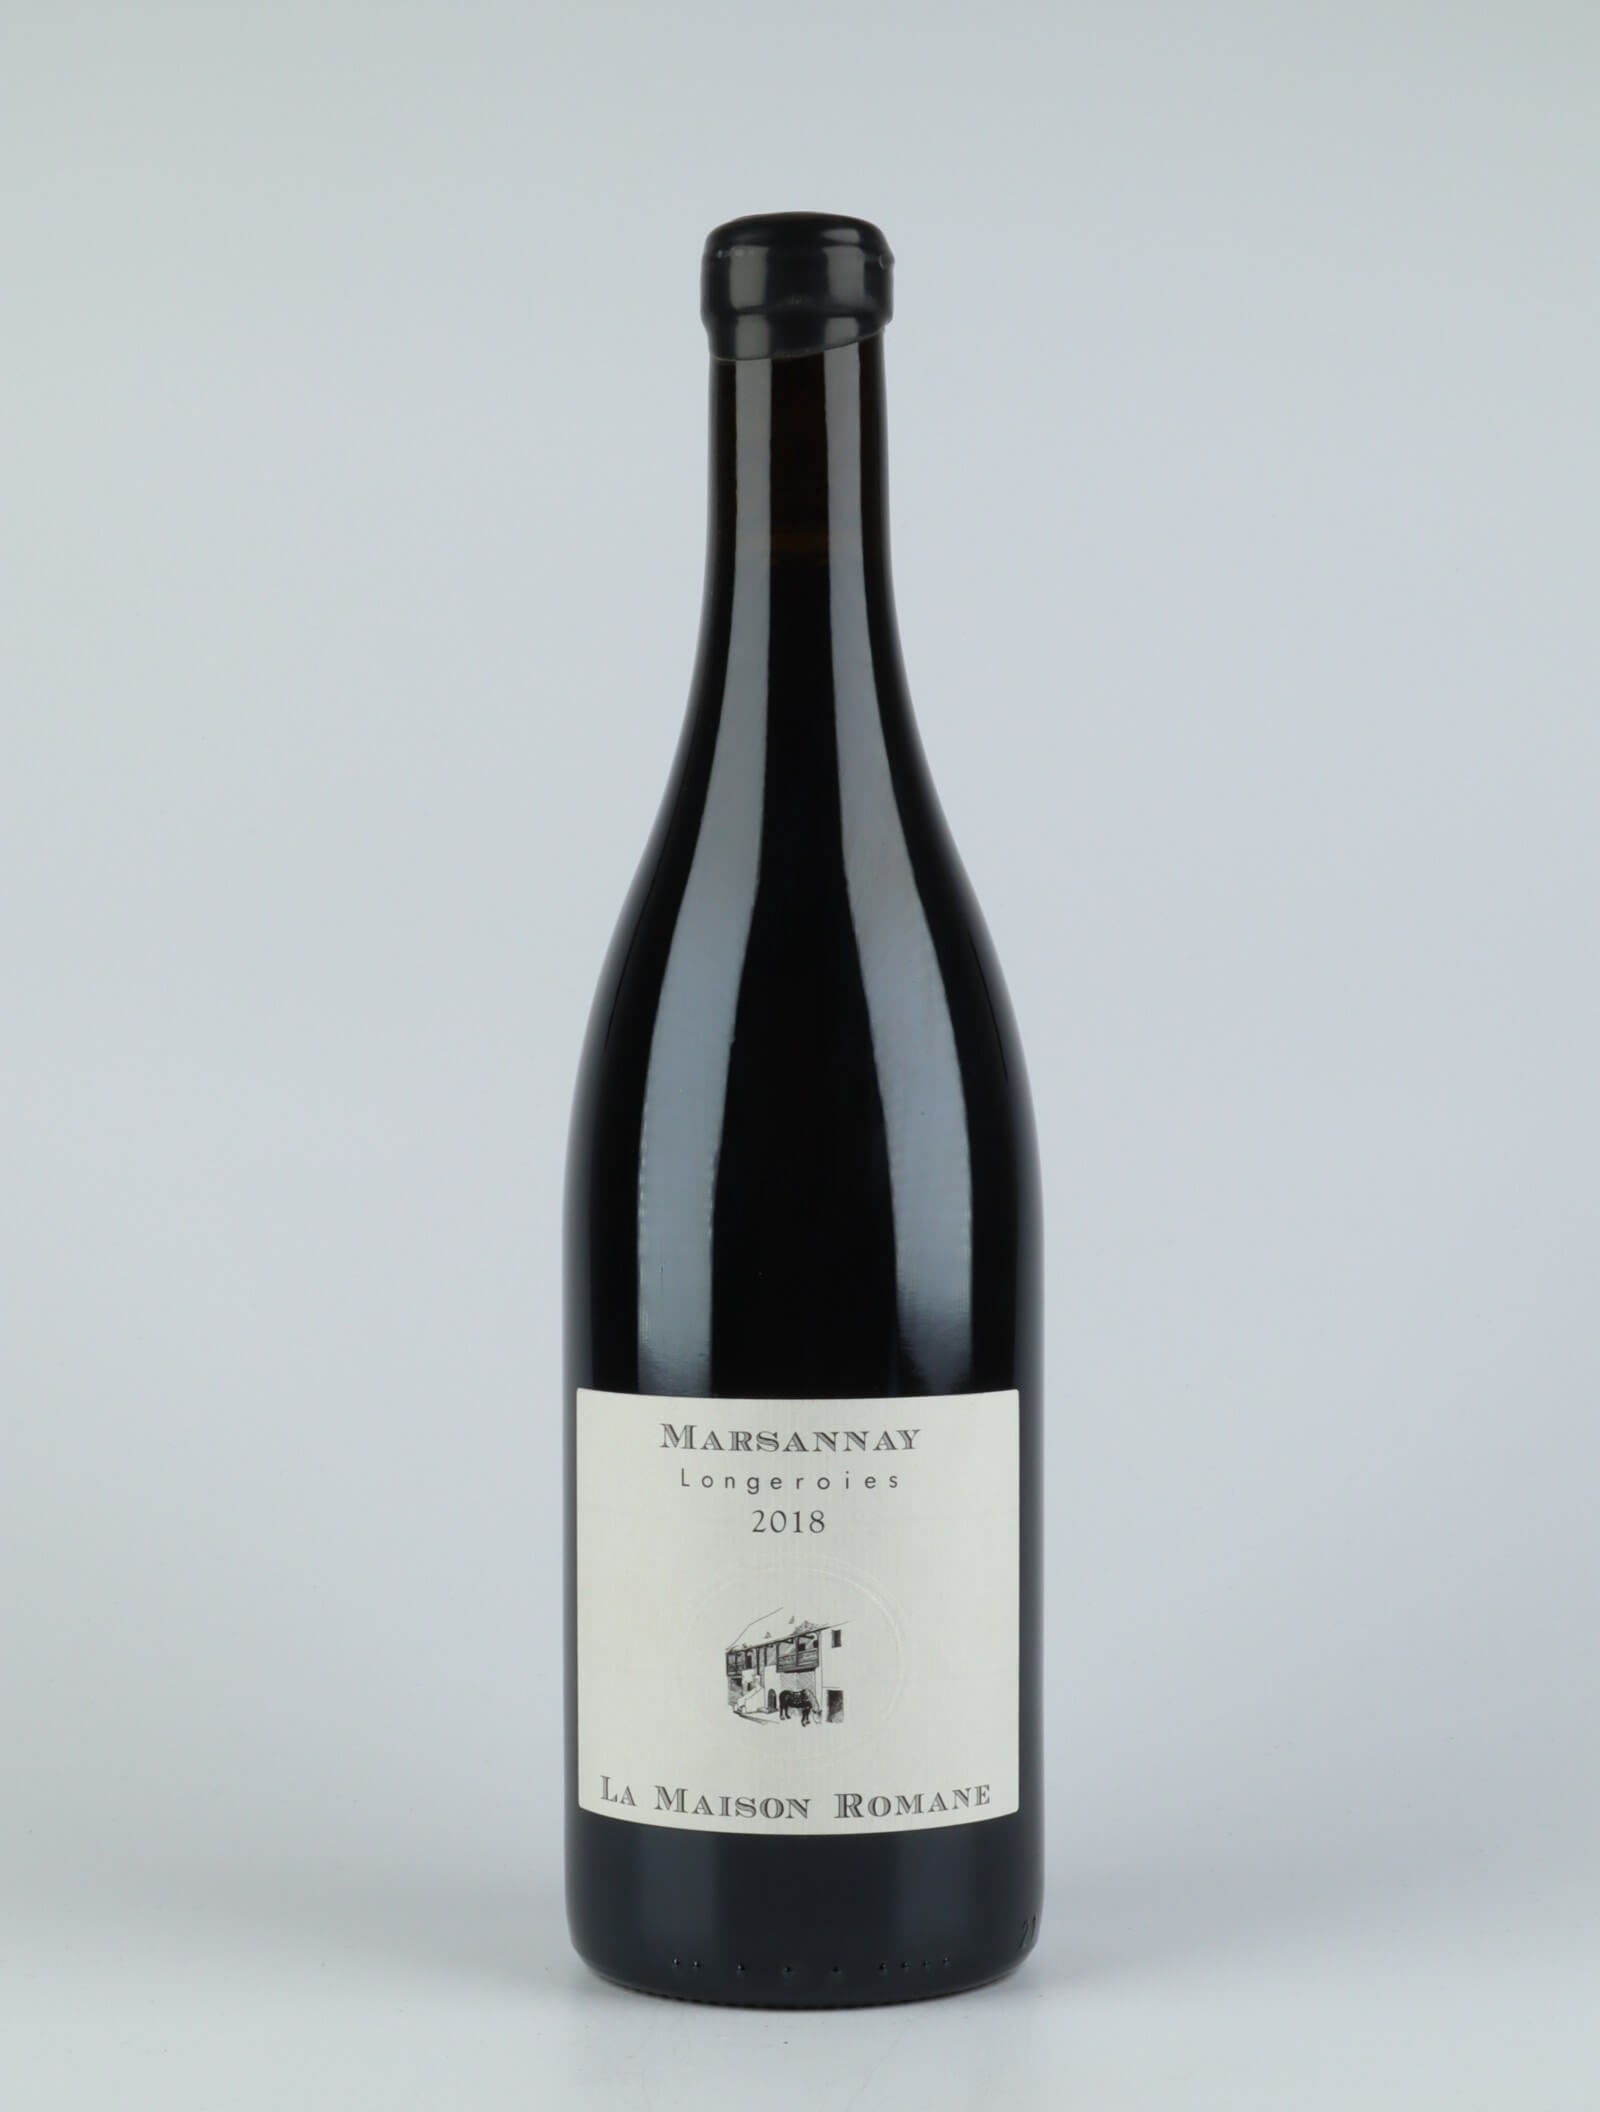 En flaske 2018 Marsannay - Longeroies Rødvin fra La Maison Romane, Bourgogne i Frankrig